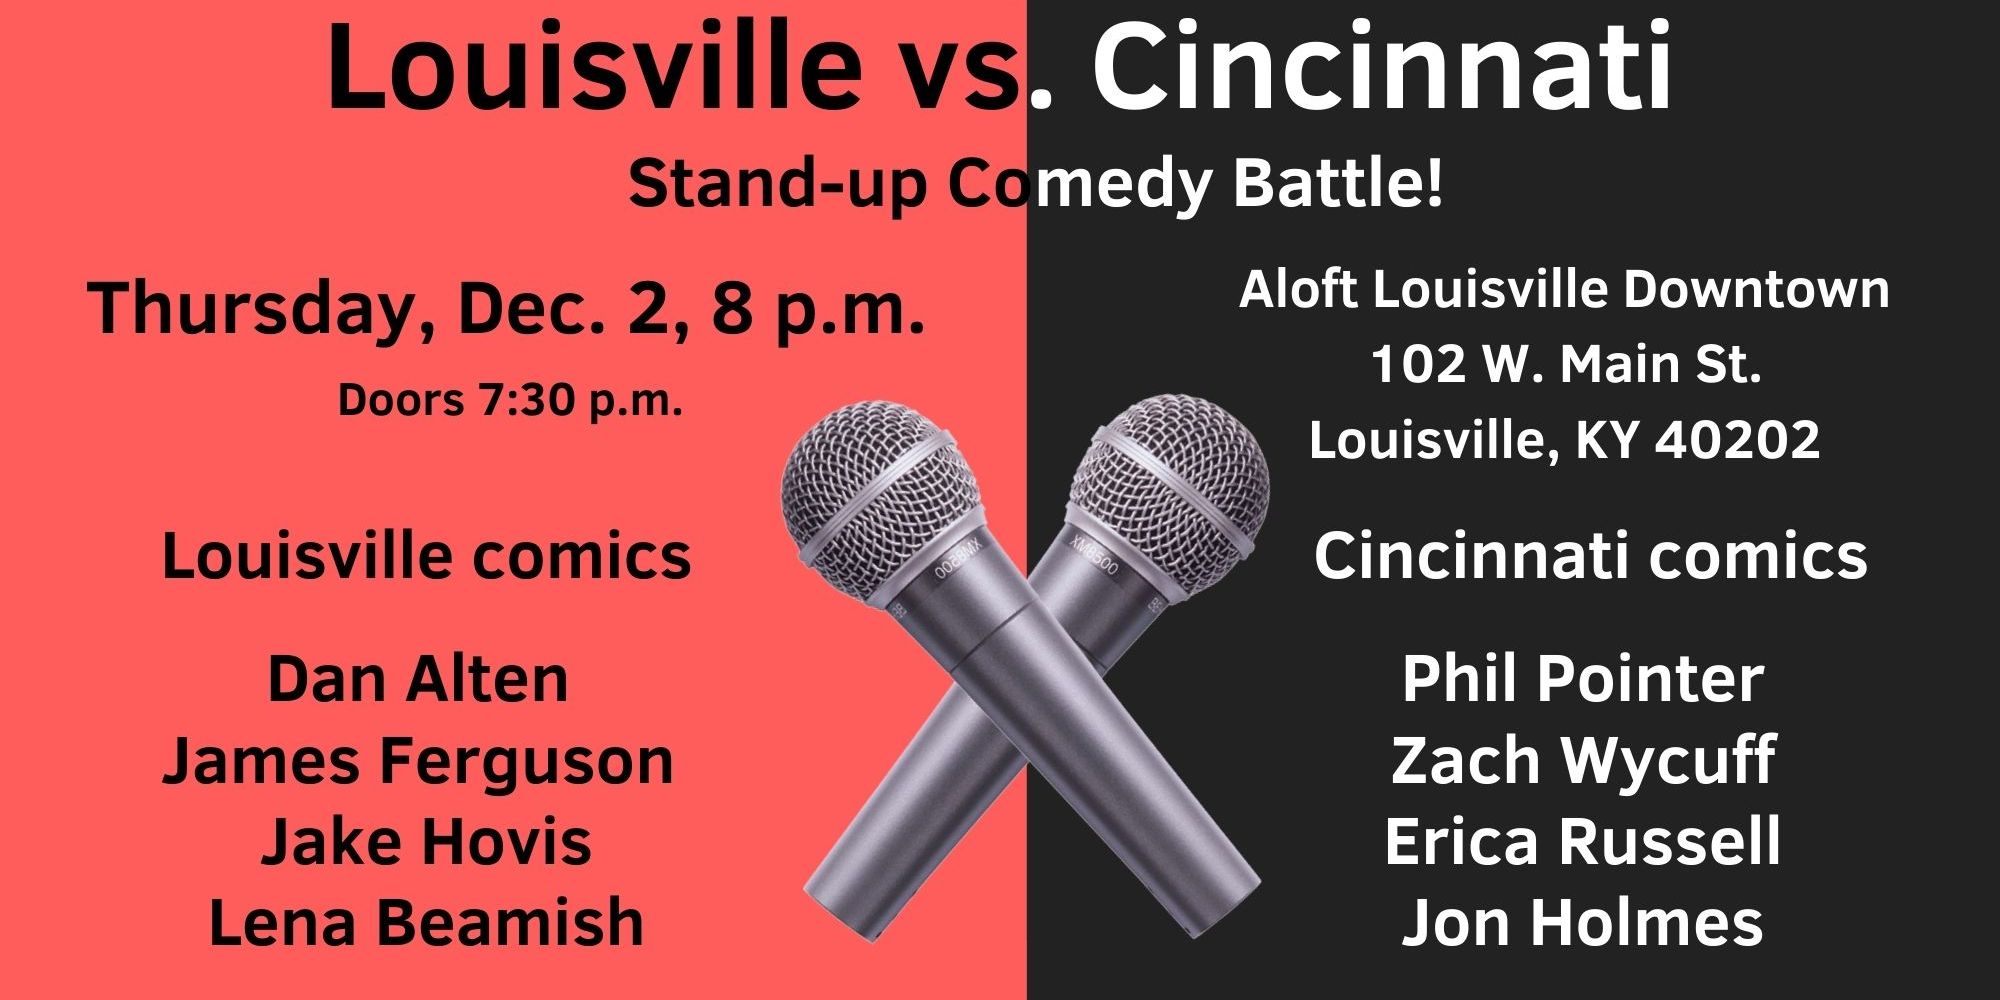 Louisville vs. Cincinnati Comedy Battle promotional image